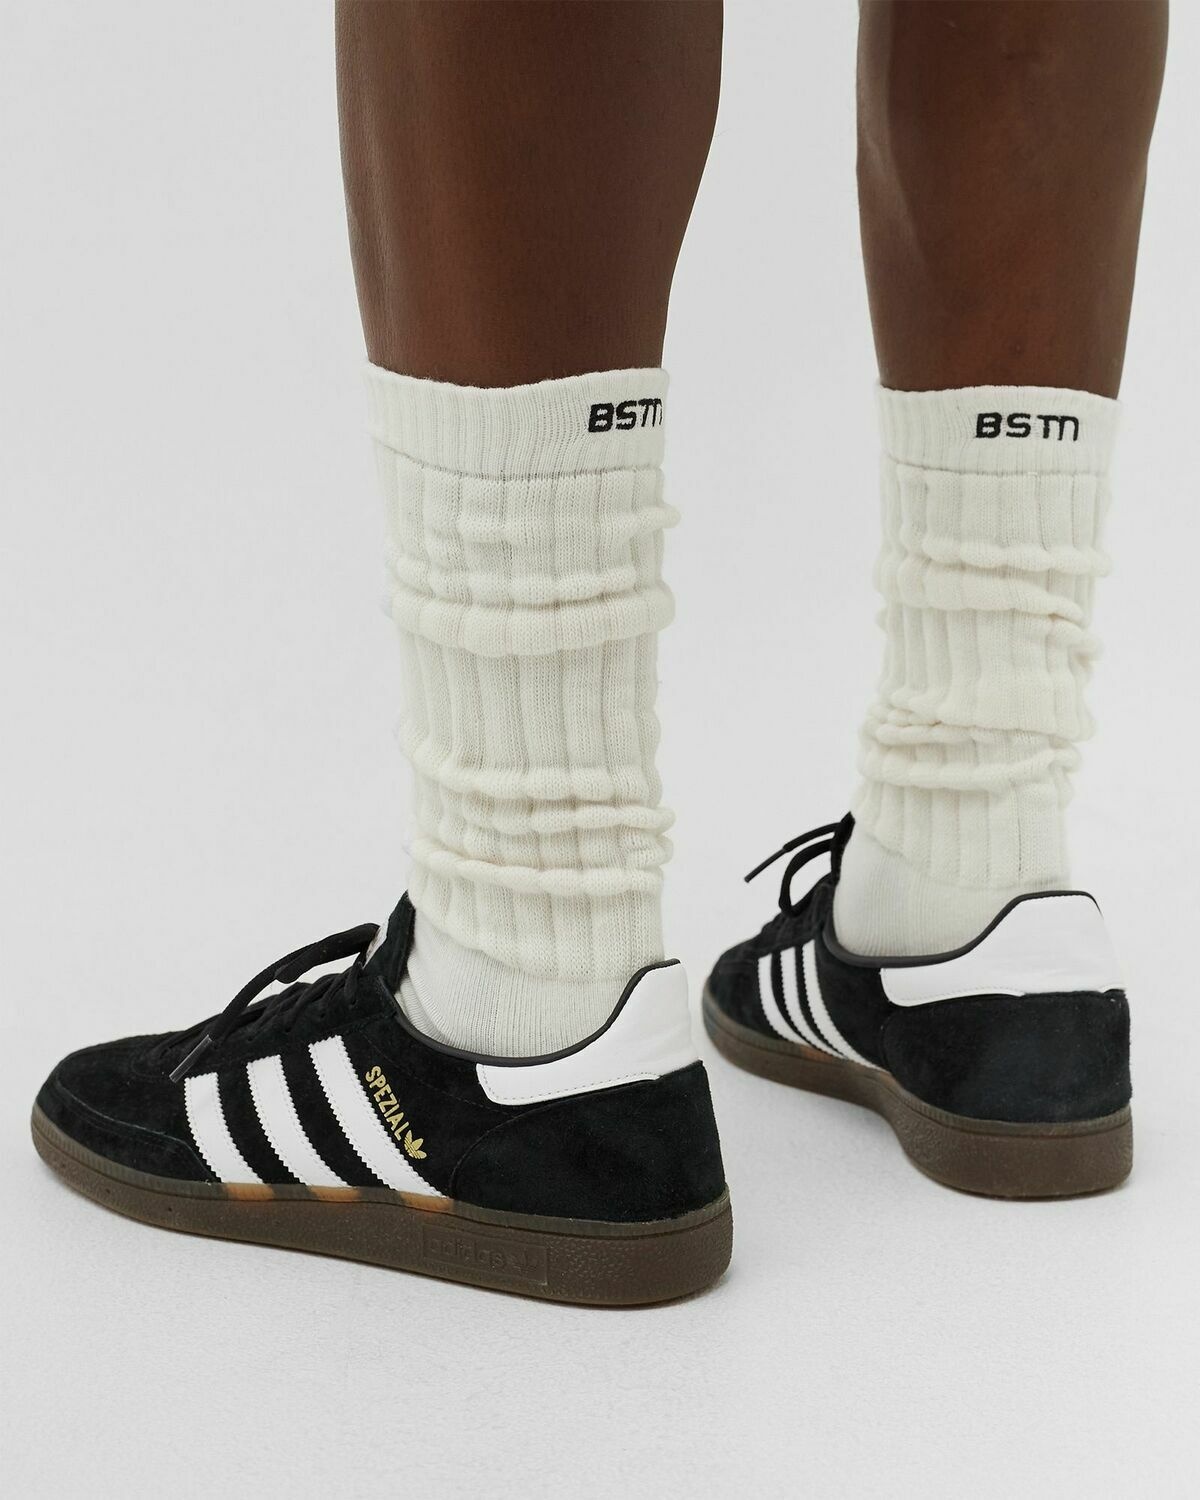 Bstn Brand Retro Socks Double Pack White - Mens - Socks